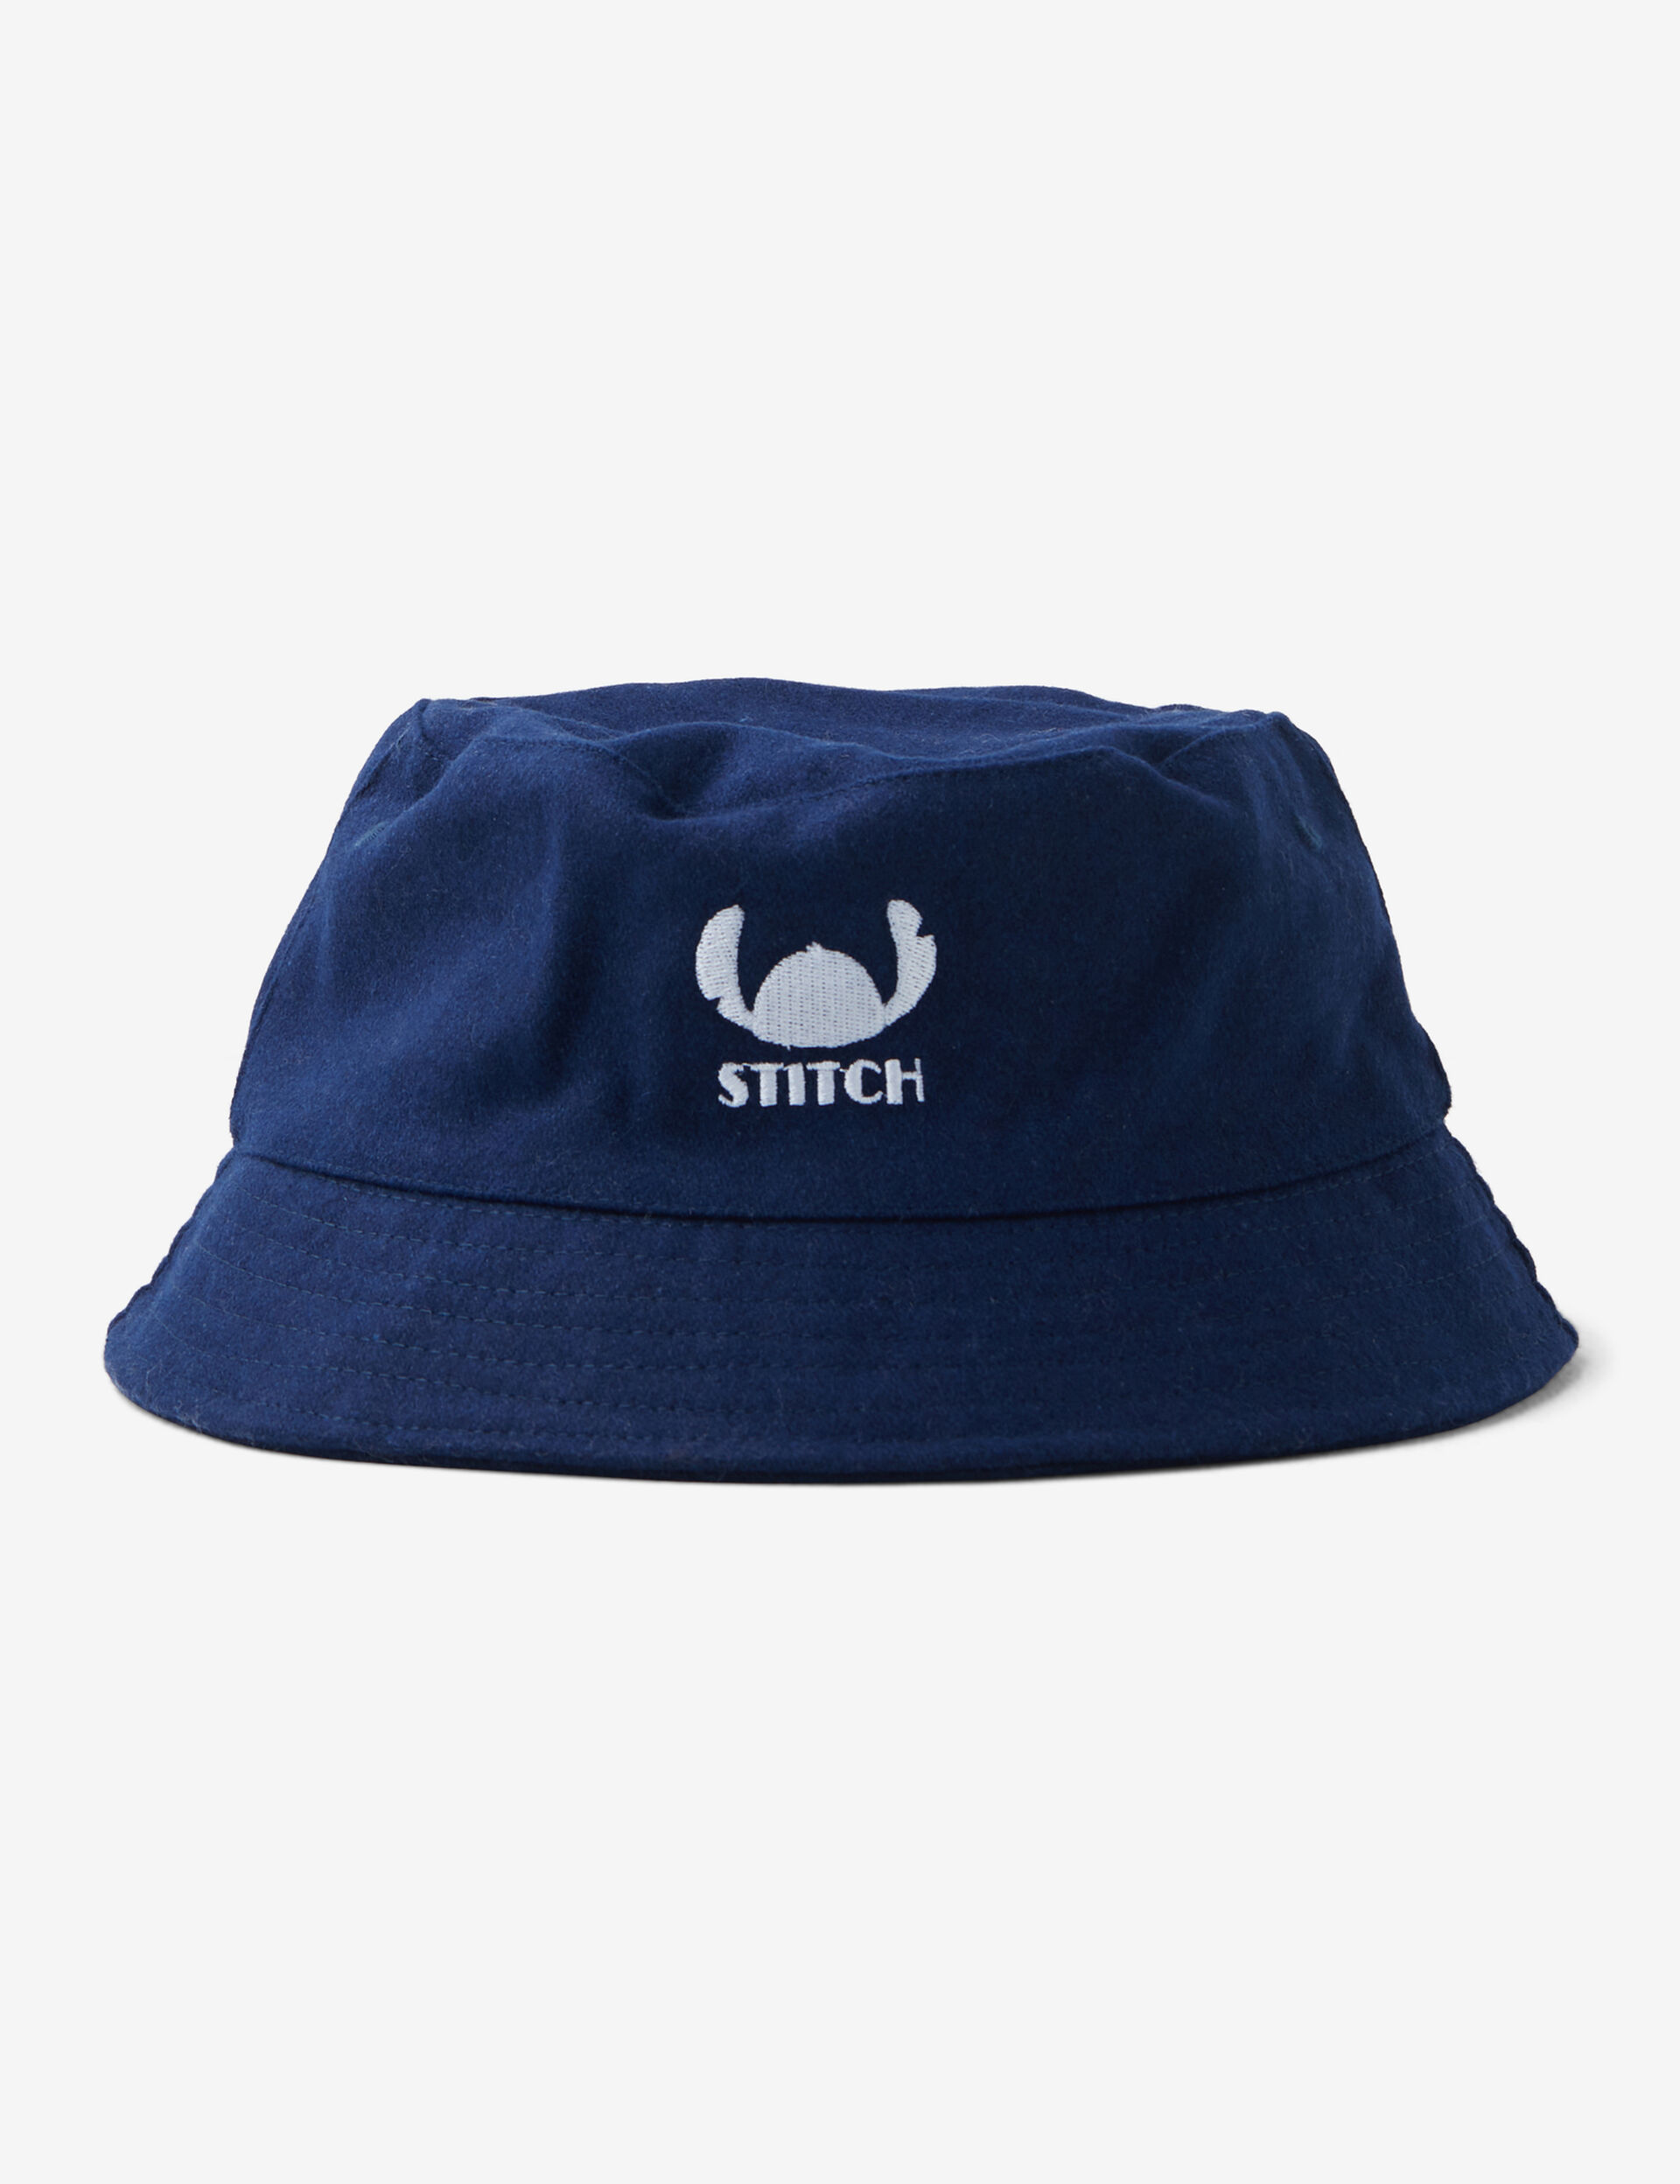 Disney Stitch bucket hat